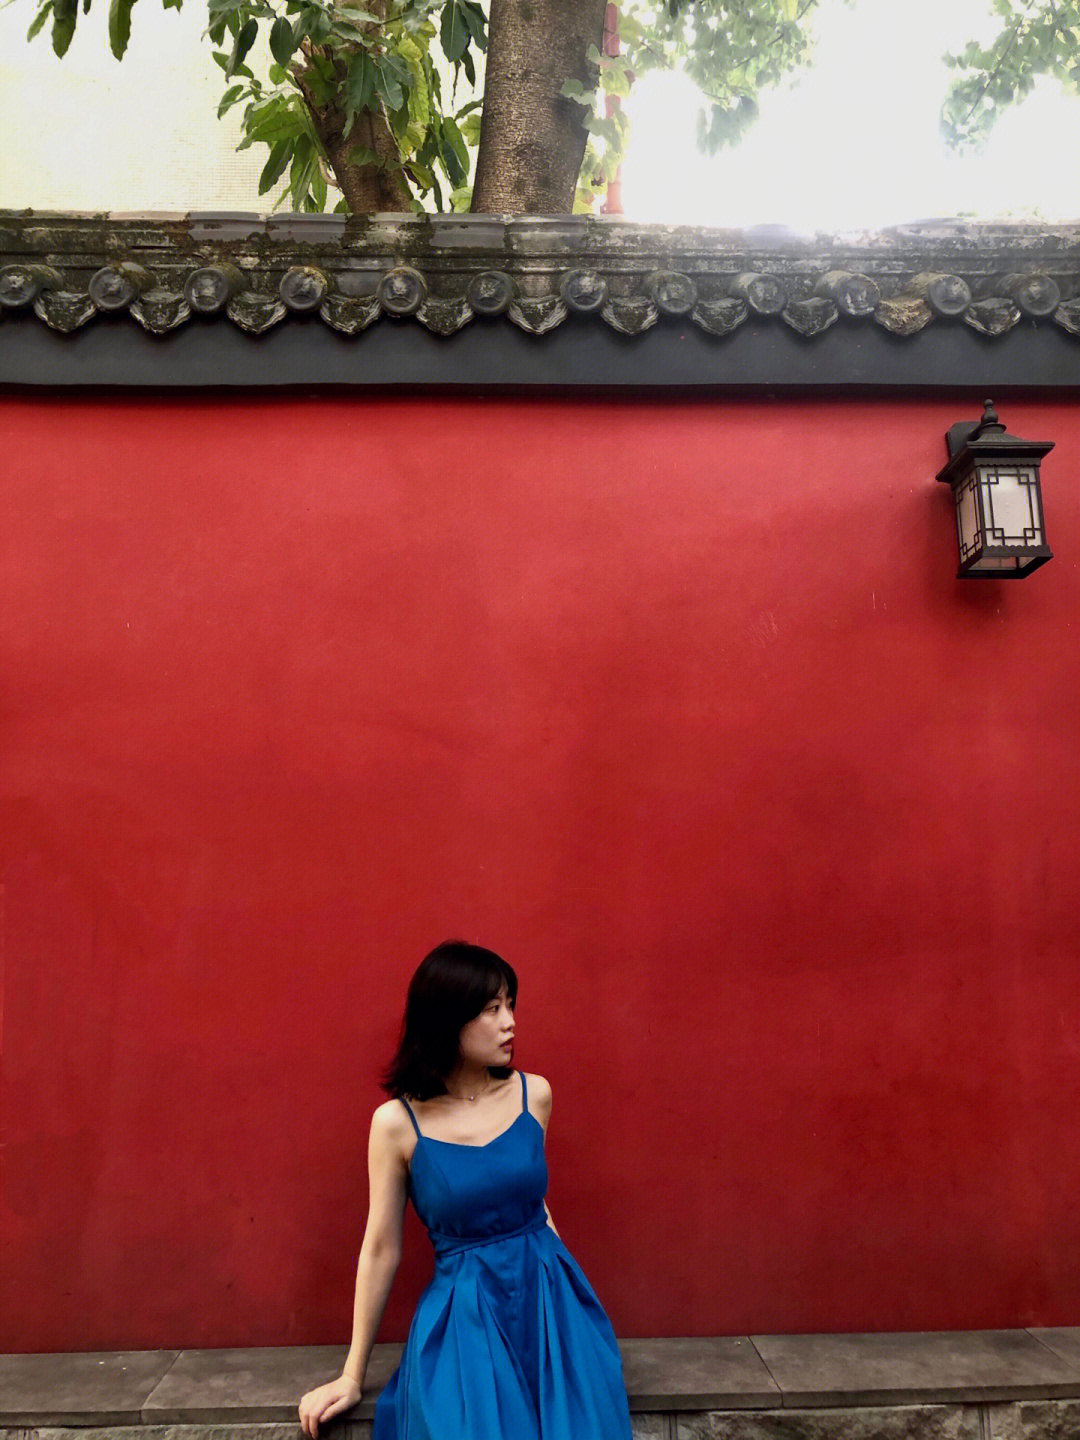 周六抓夏天的尾巴,克莱因蓝裙子和红墙好配